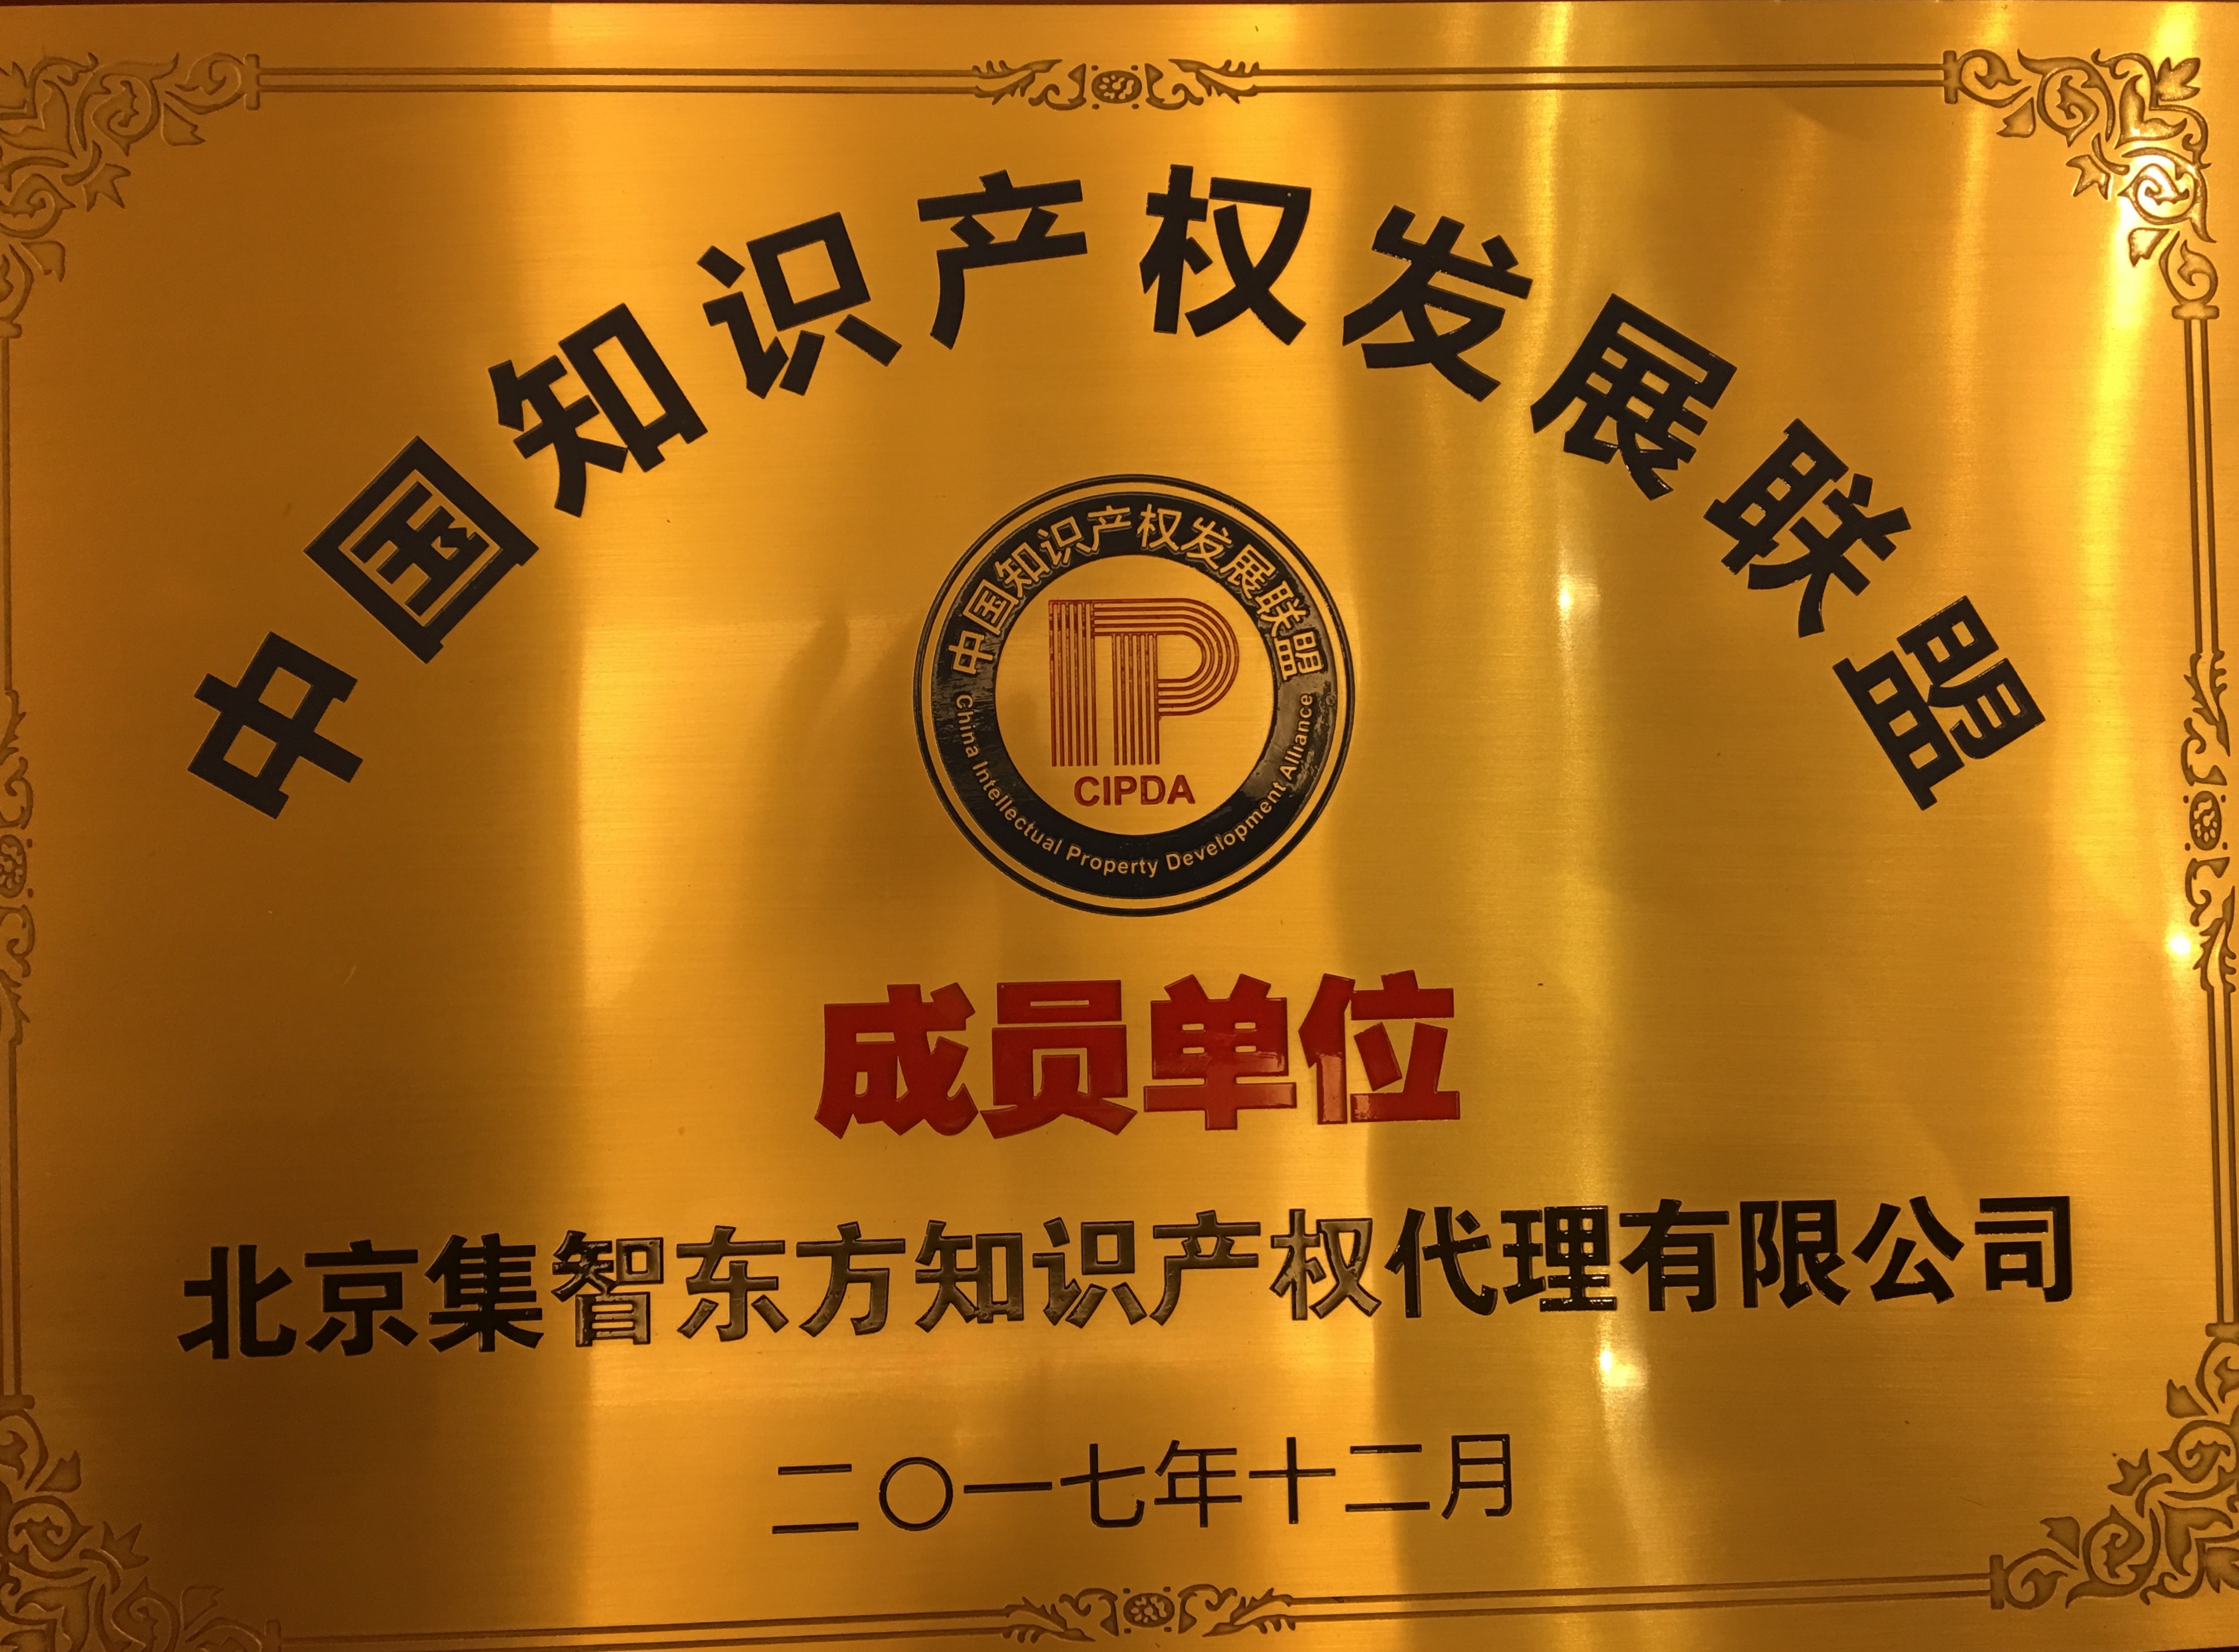 中国知识产权发展联盟成员单位